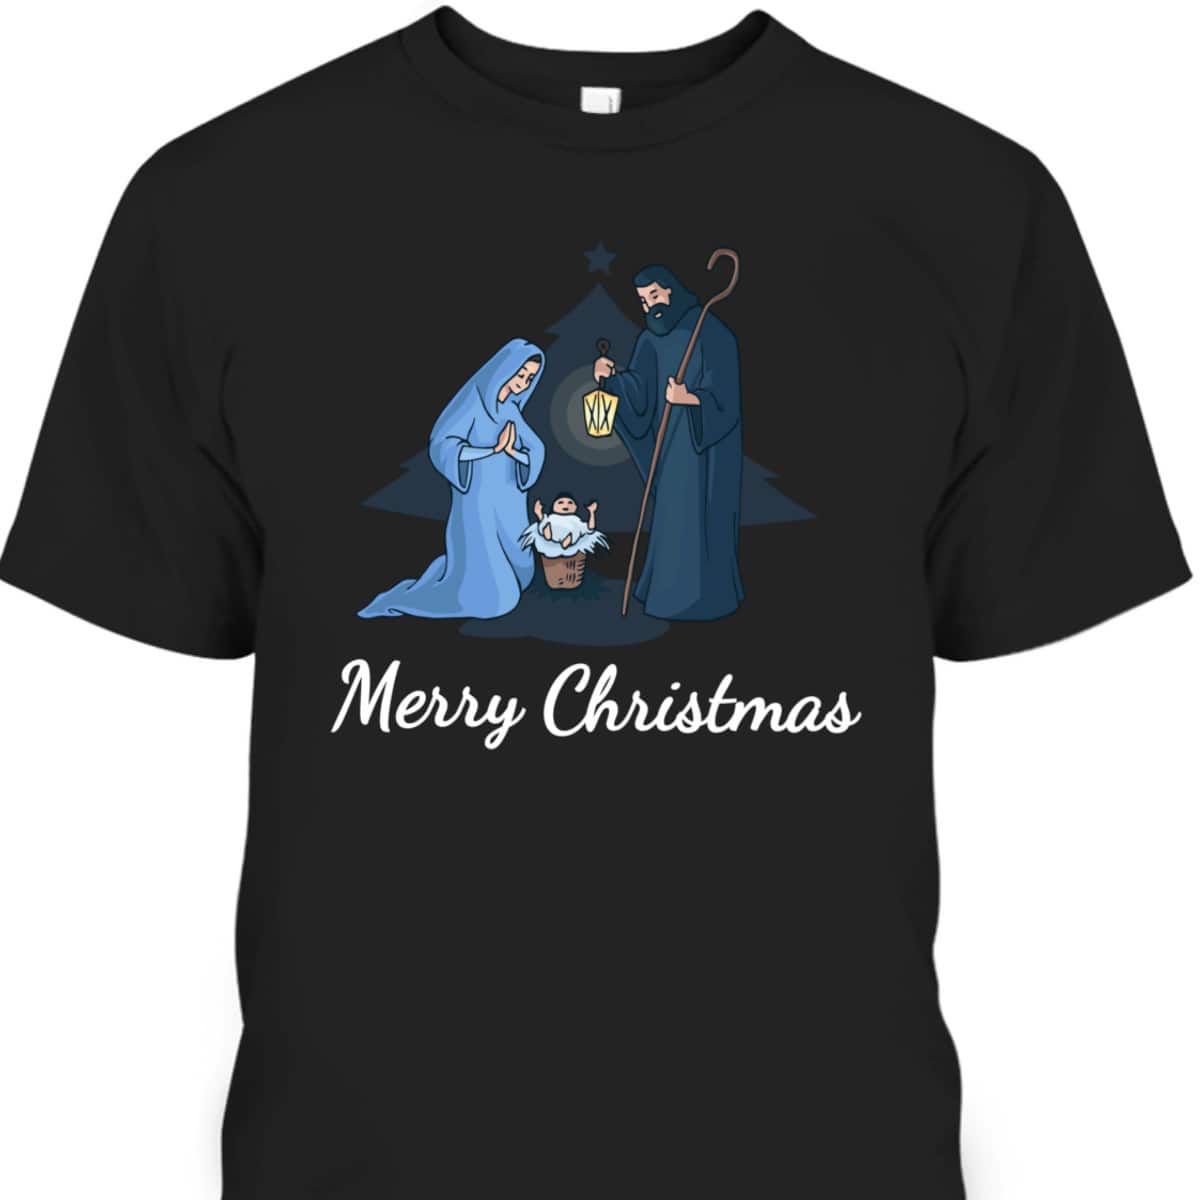 Merry Christmas And Nativity Scene Christian Faith Holiday T-Shirt